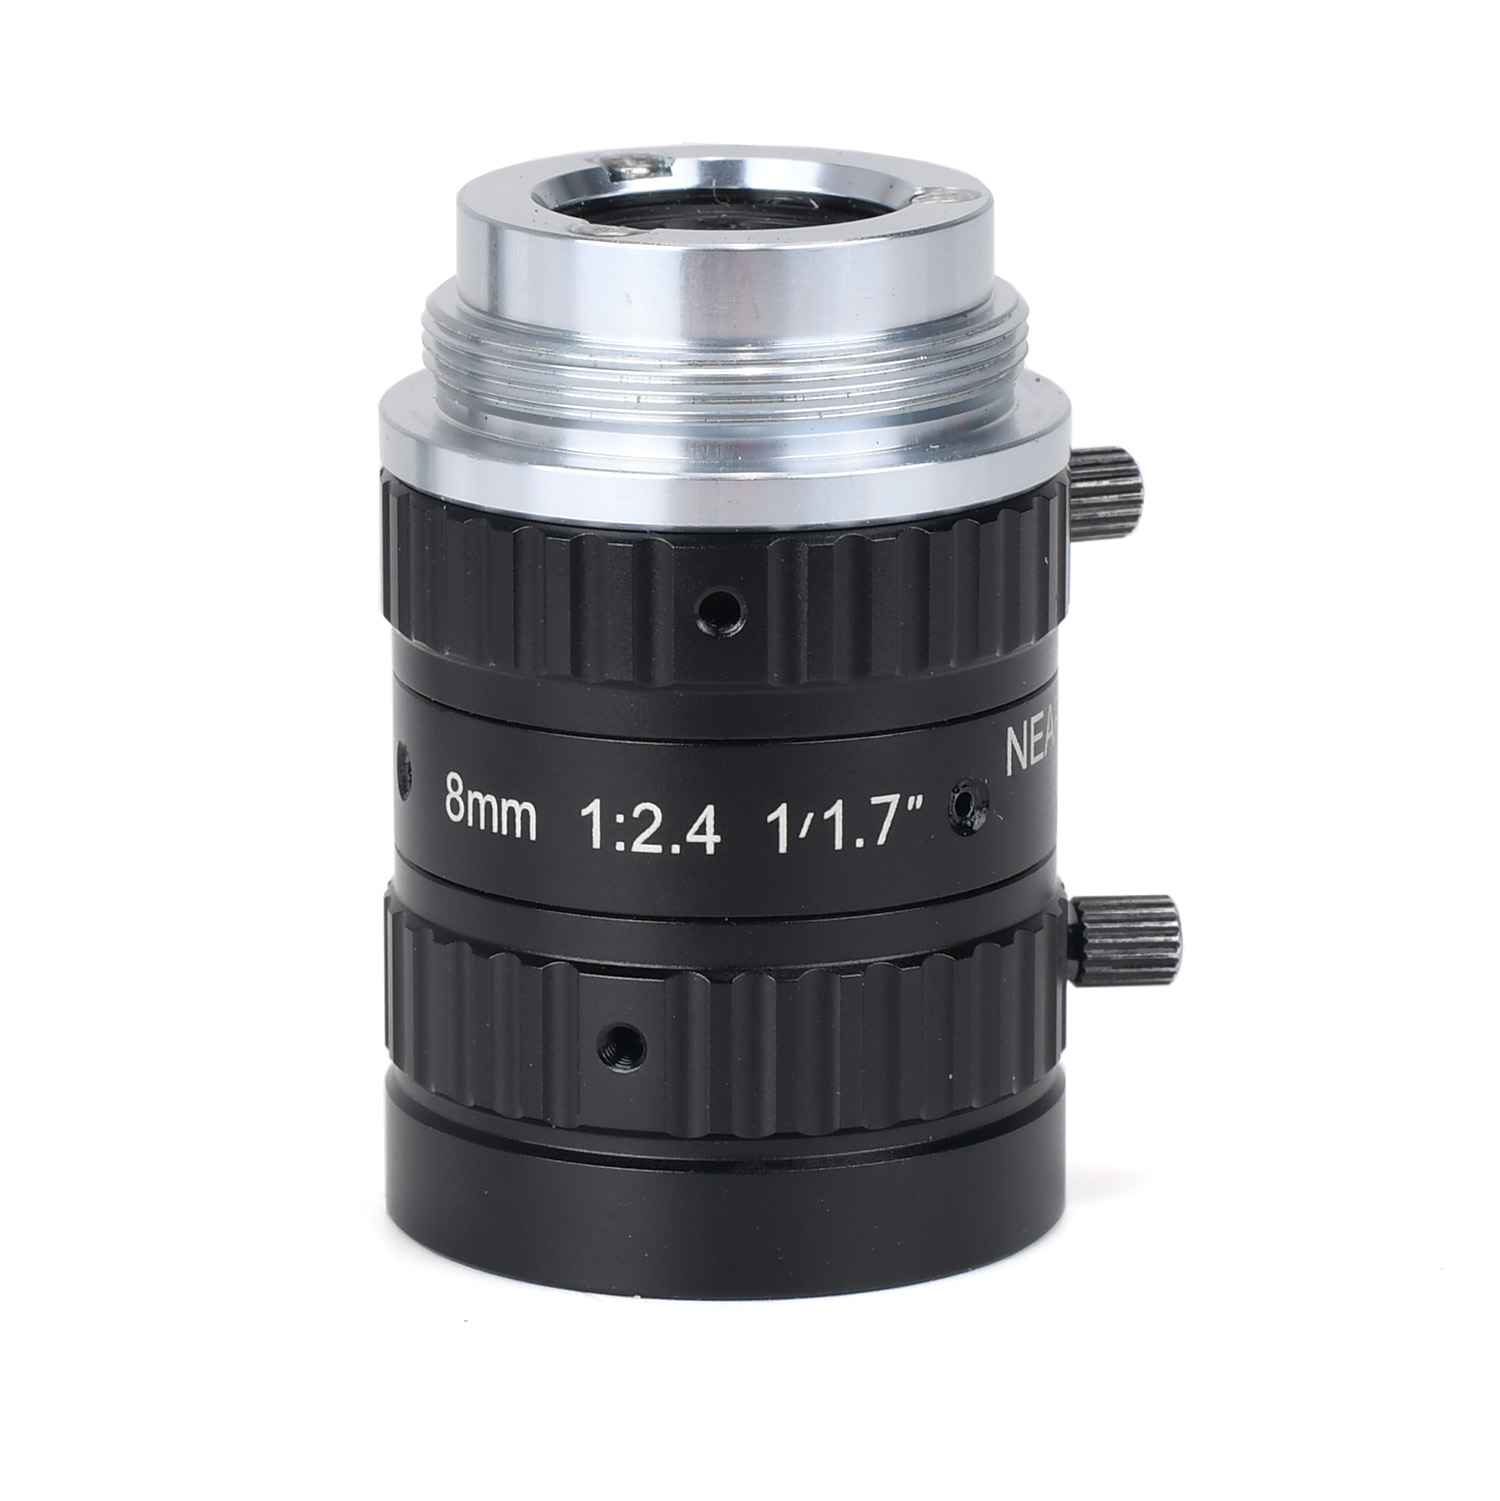 8mm Lens 1/1.7"